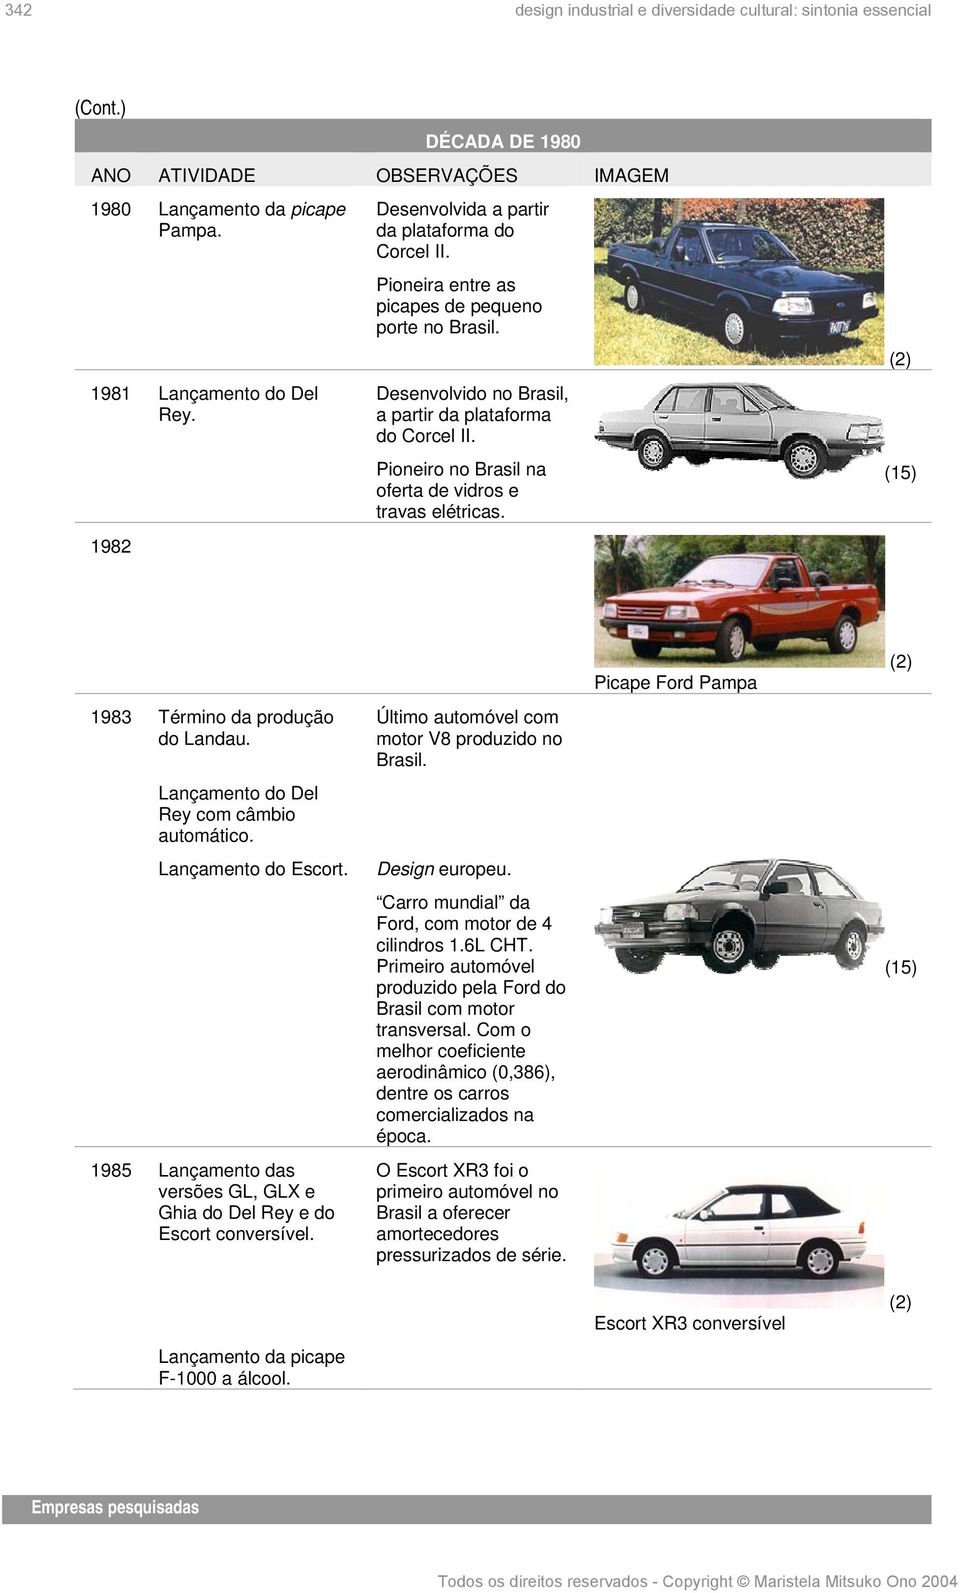 (2) 1983 Término da produção do Landau. Lançamento do Del Rey com câmbio automático. Lançamento do Escort. 1985 Lançamento das versões GL, GLX e Ghia do Del Rey e do Escort conversível.